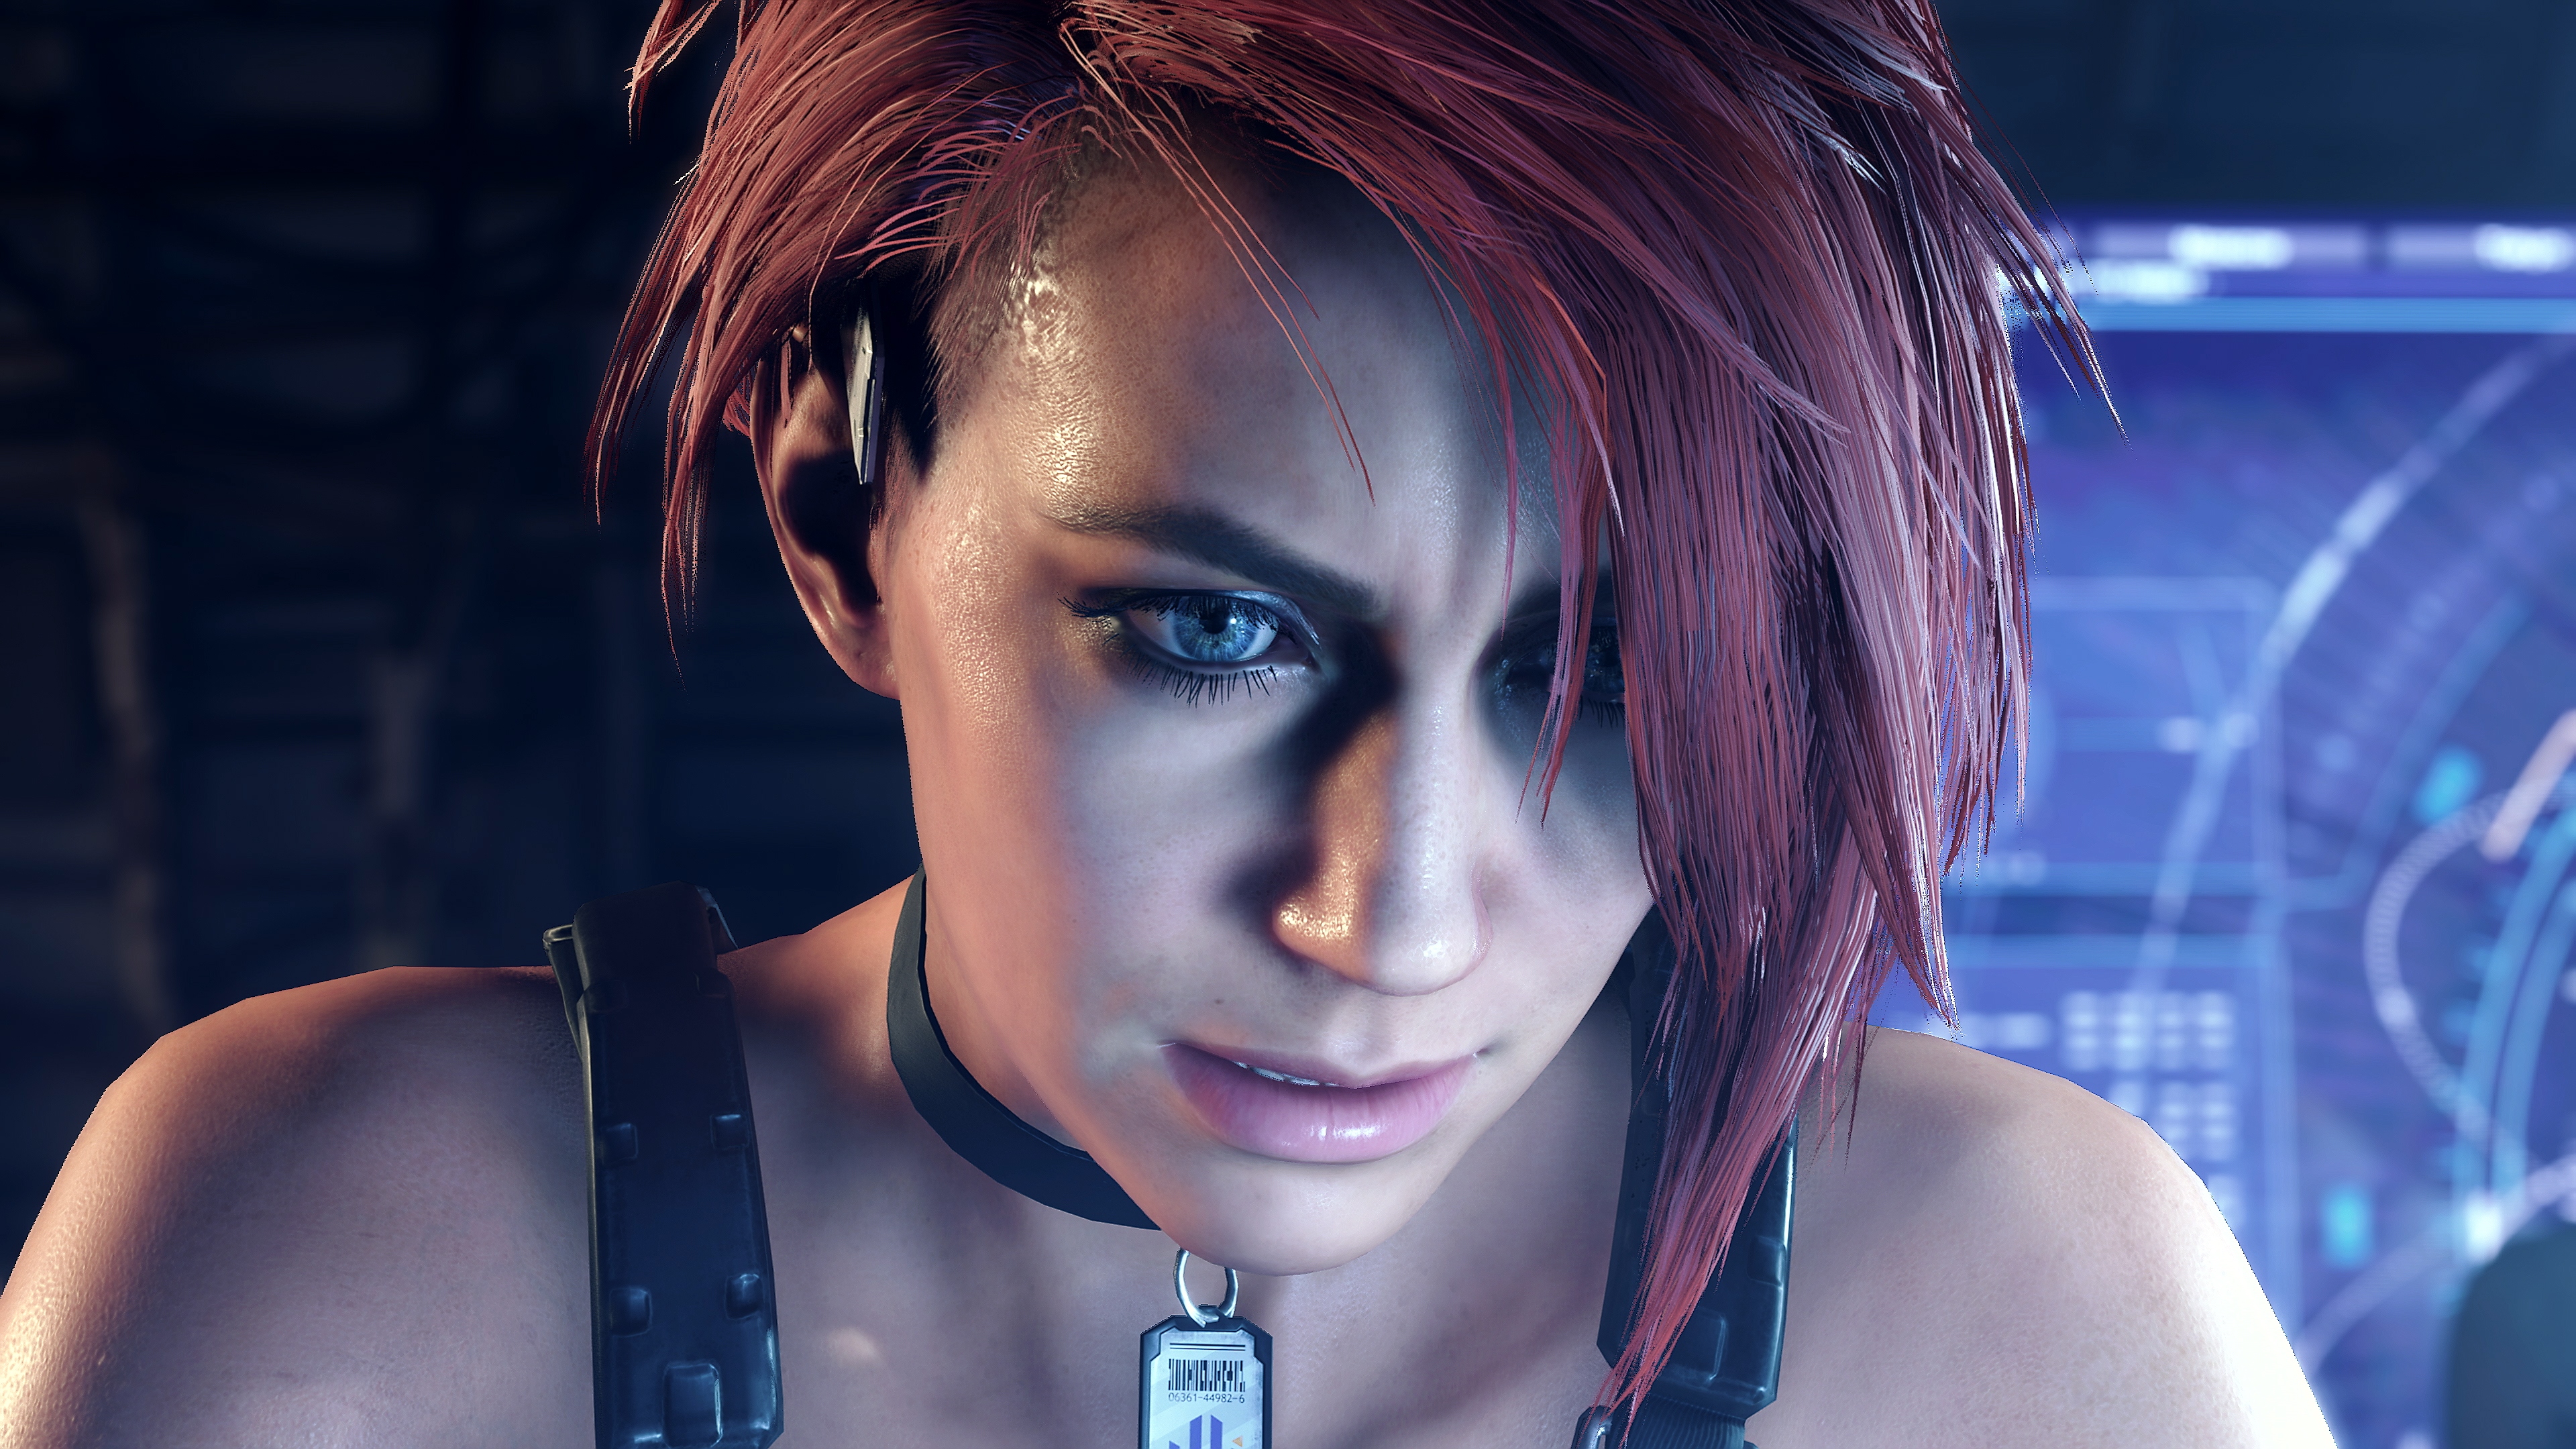 Captura de pantalla de Exoprimal - Imagen de cerca de un personaje con el pelo rojo